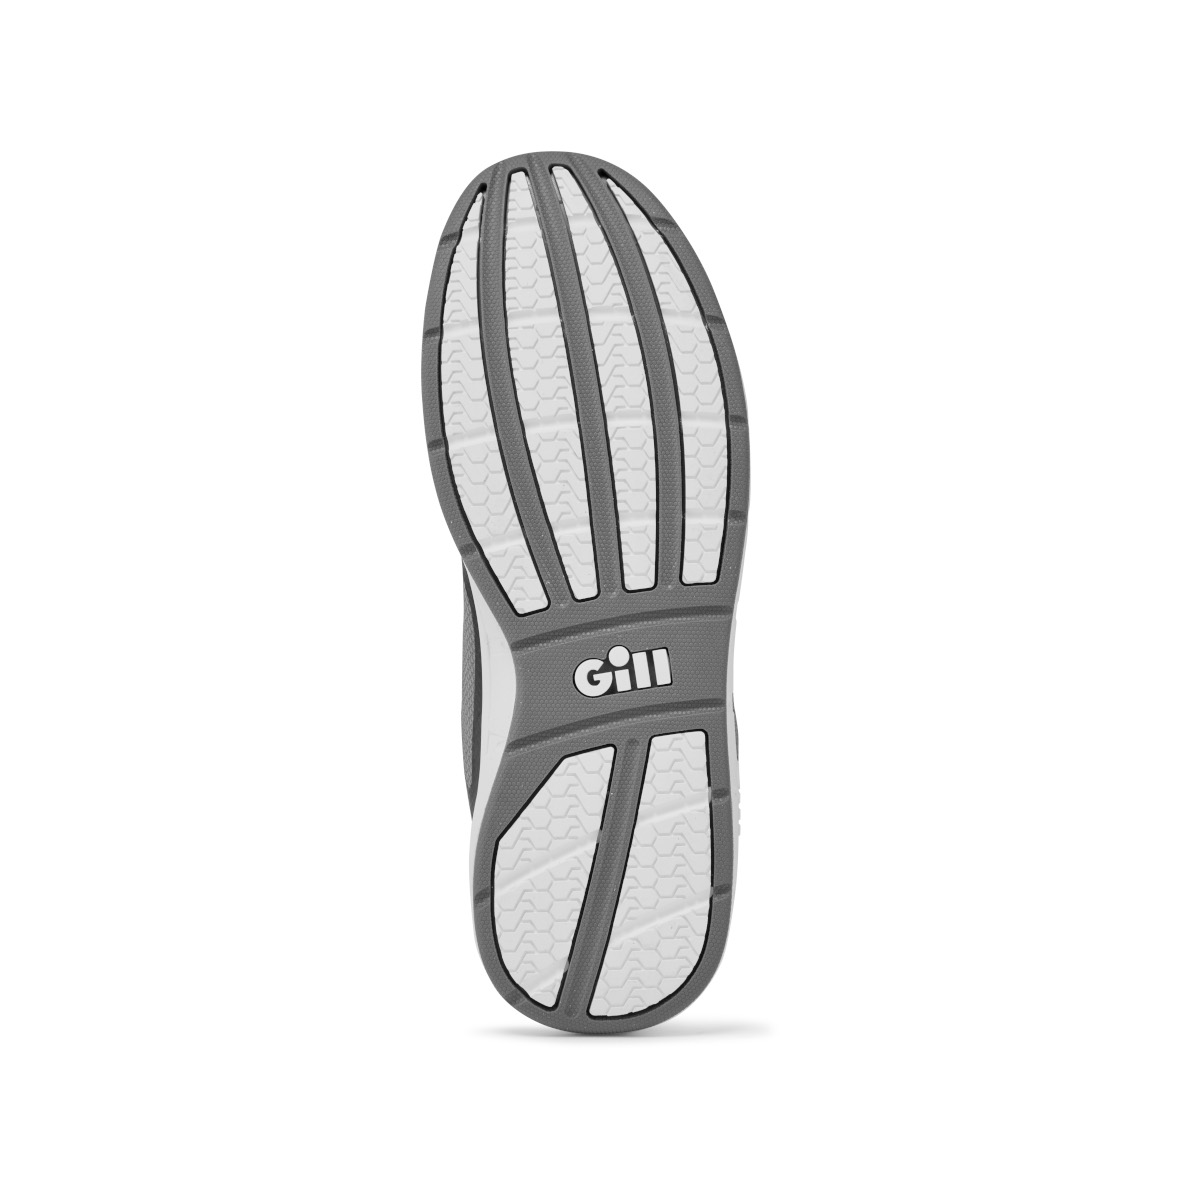 Gill Mawgan chaussure de voile, unisexe - noir/gris, pointure 46